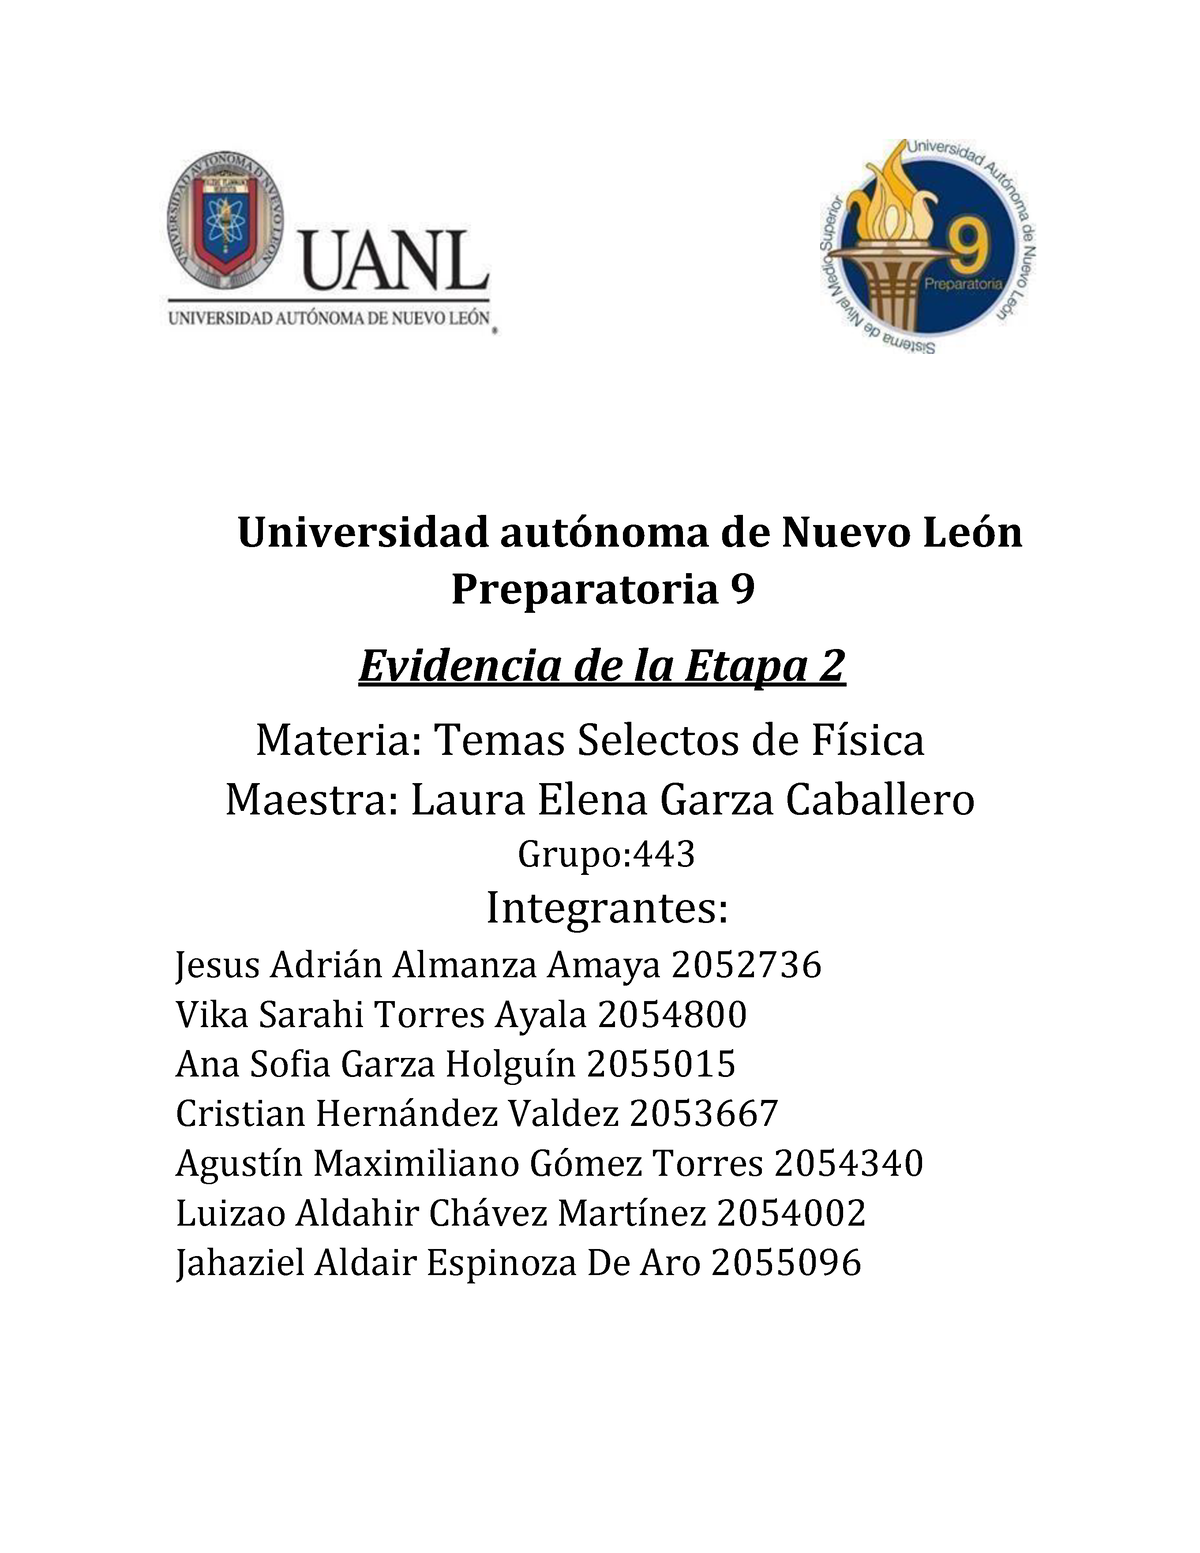 Equipo 4 Ev2 Temas Selectos De Fisica Universidad Autónoma De Nuevo León Preparatoria 9 6281